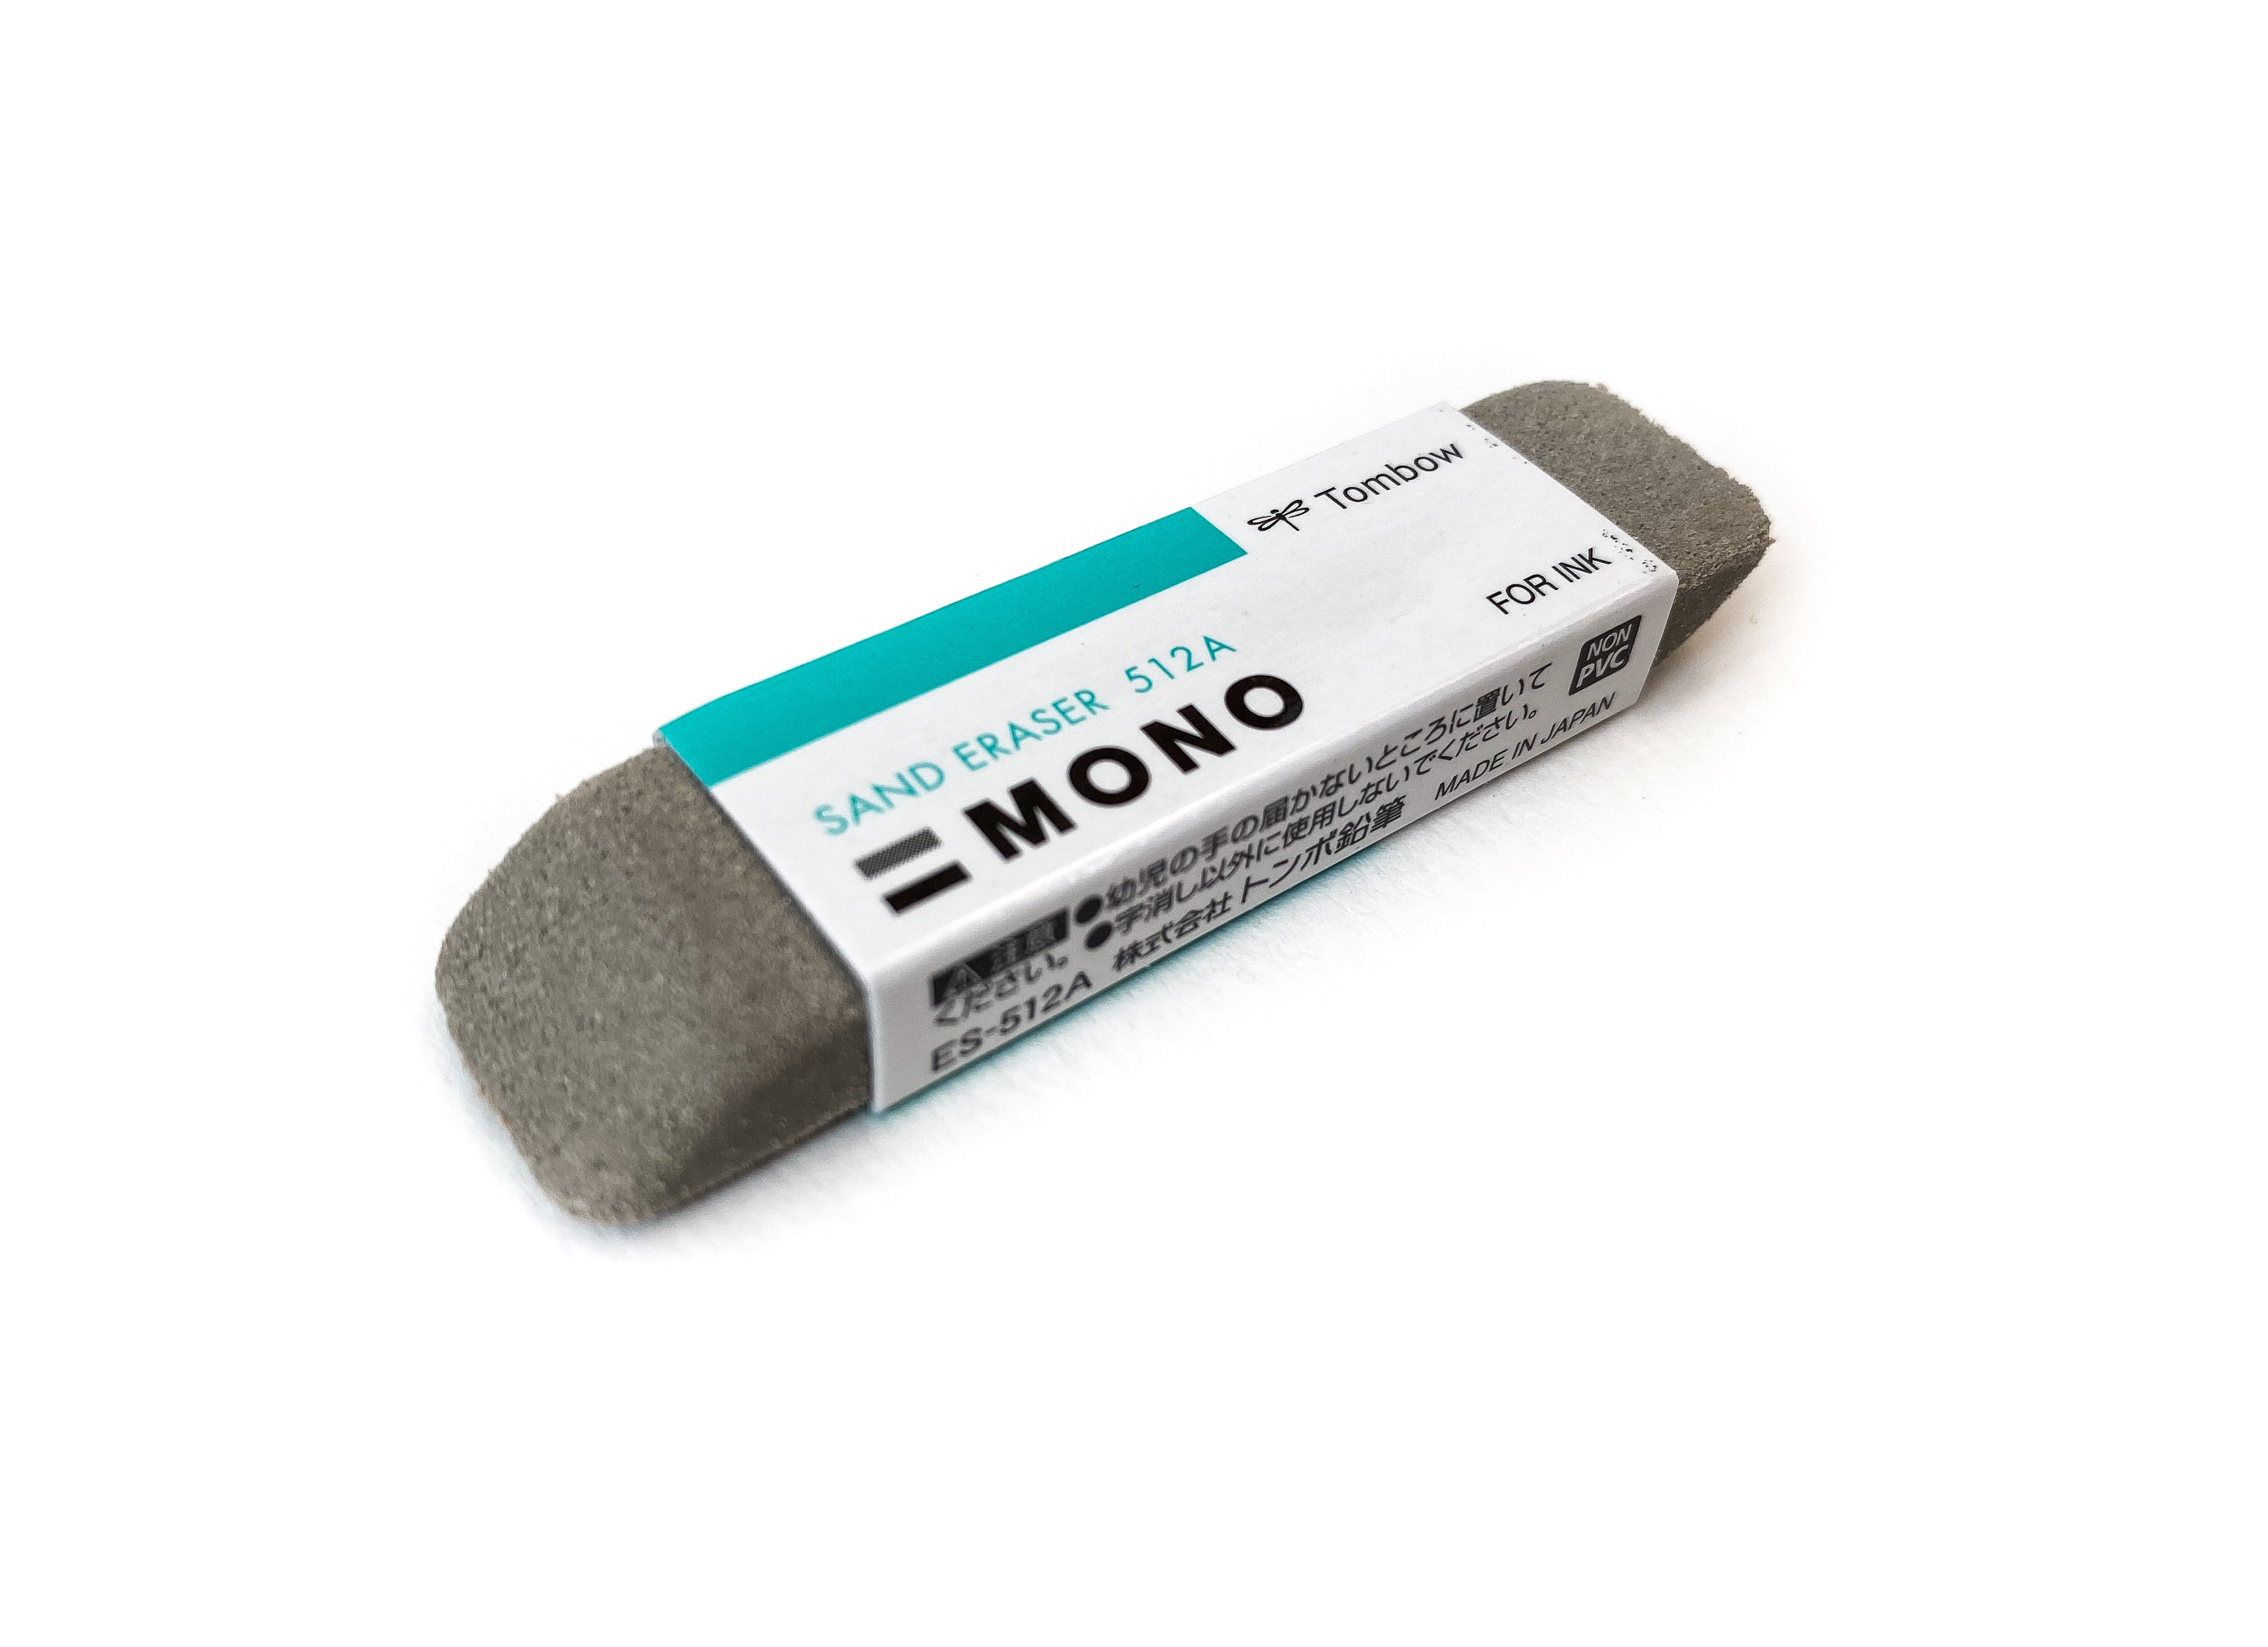 TOMBOW: Mono Sand Eraser